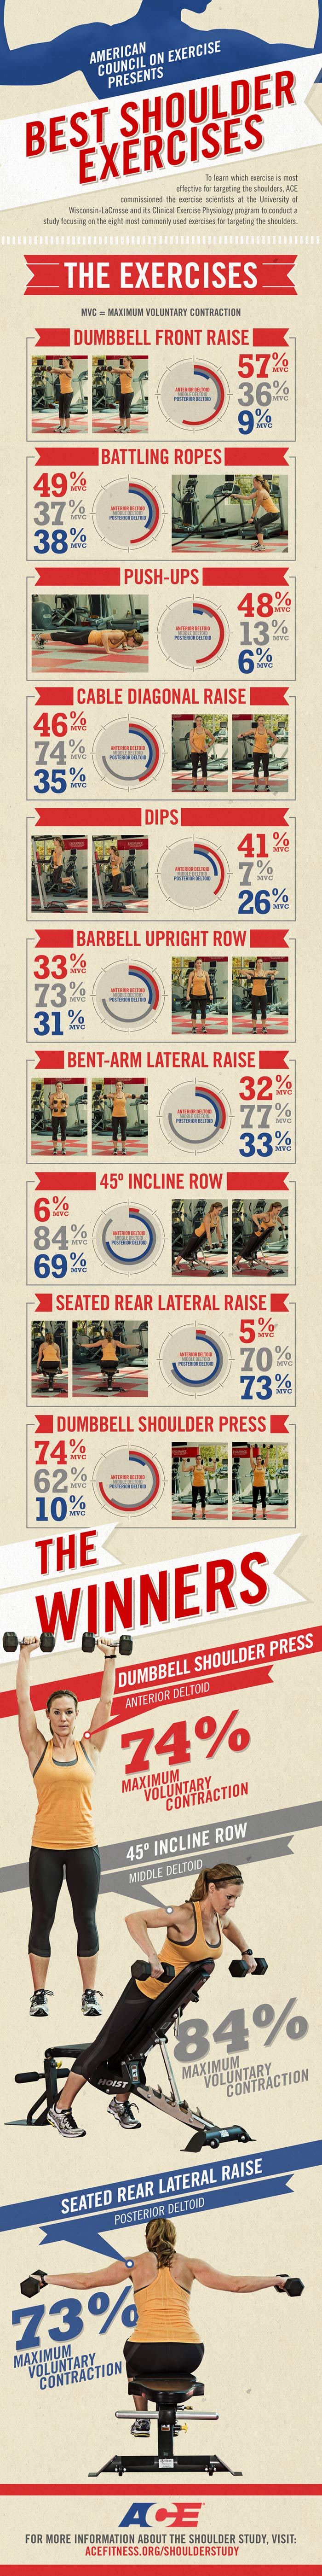 Best shoulder exercises